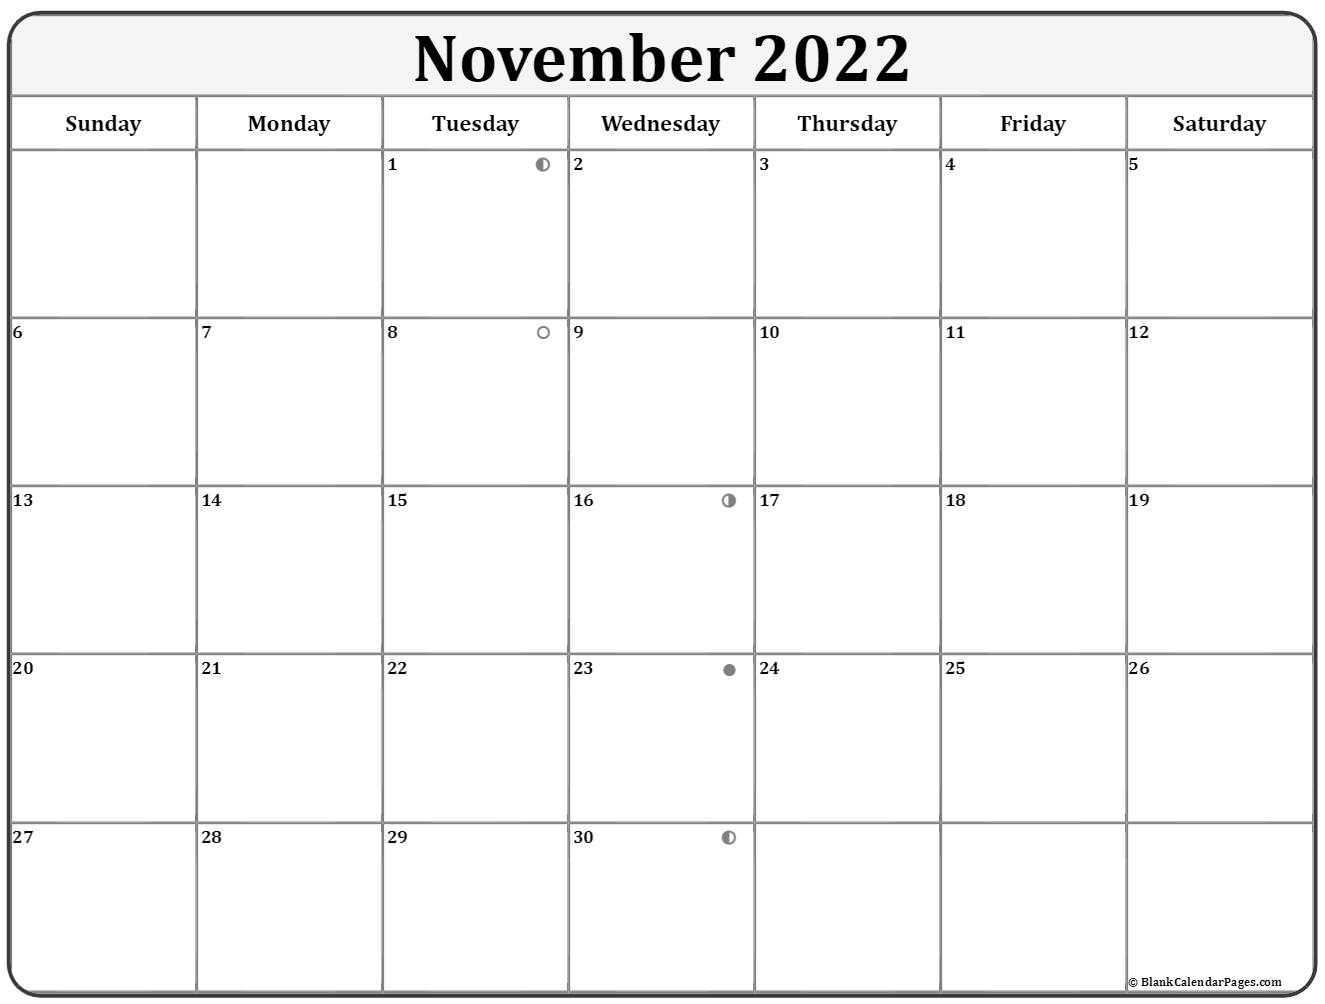 November 2022 Lunar Calendar | Moon Phase Calendar November 2021 Moon Phase Calendar